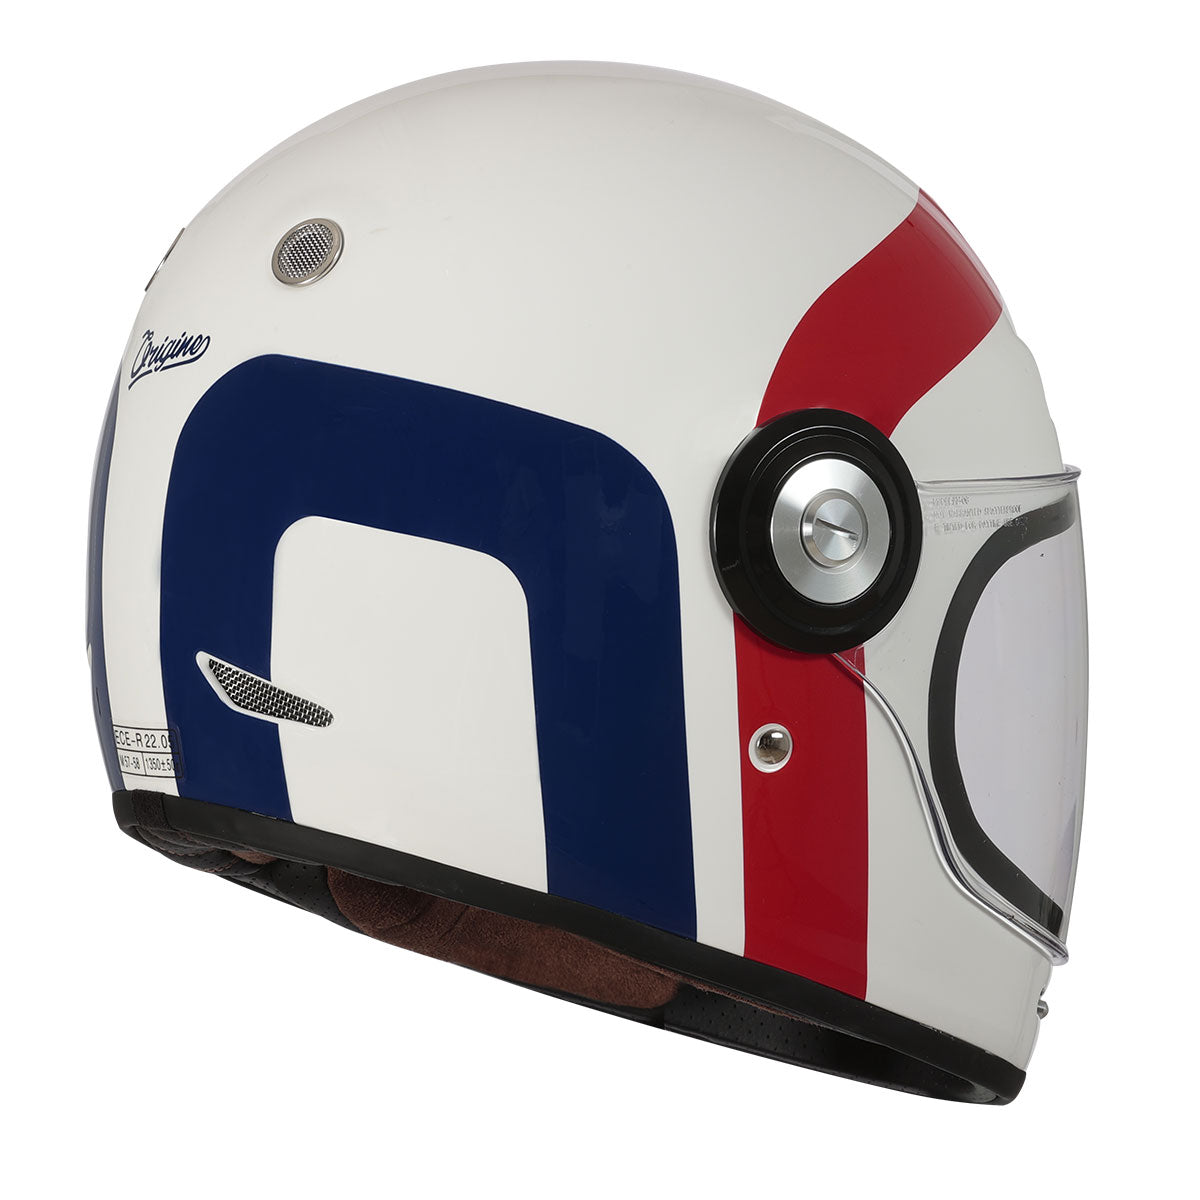 ORIGINE Vega Helmet, Great Gloss Red Blue White